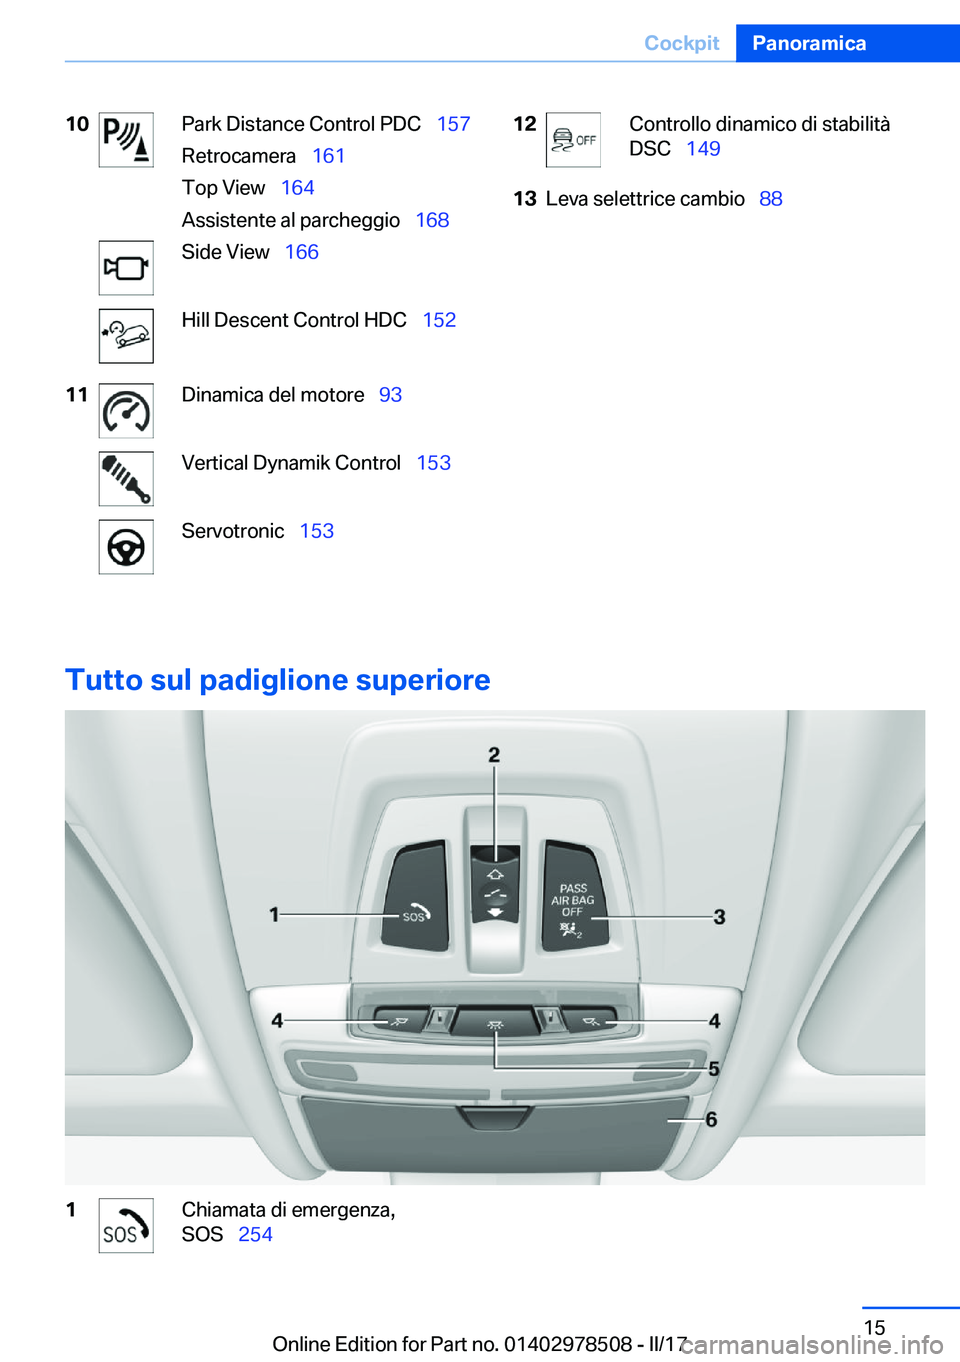 BMW X6 M 2017  Libretti Di Uso E manutenzione (in Italian) �1�0�P�a�r�k� �D�i�s�t�a�n�c�e� �C�o�n�t�r�o�l� �P�D�C\_�1�5�7
�R�e�t�r�o�c�a�m�e�r�a\_ �1�6�1
�T�o�p� �V�i�e�w\_ �1�6�4
�A�s�s�i�s�t�e�n�t�e� �a�l� �p�a�r�c�h�e�g�g�i�o\_ �1�6�8�S�i�d�e� �V�i